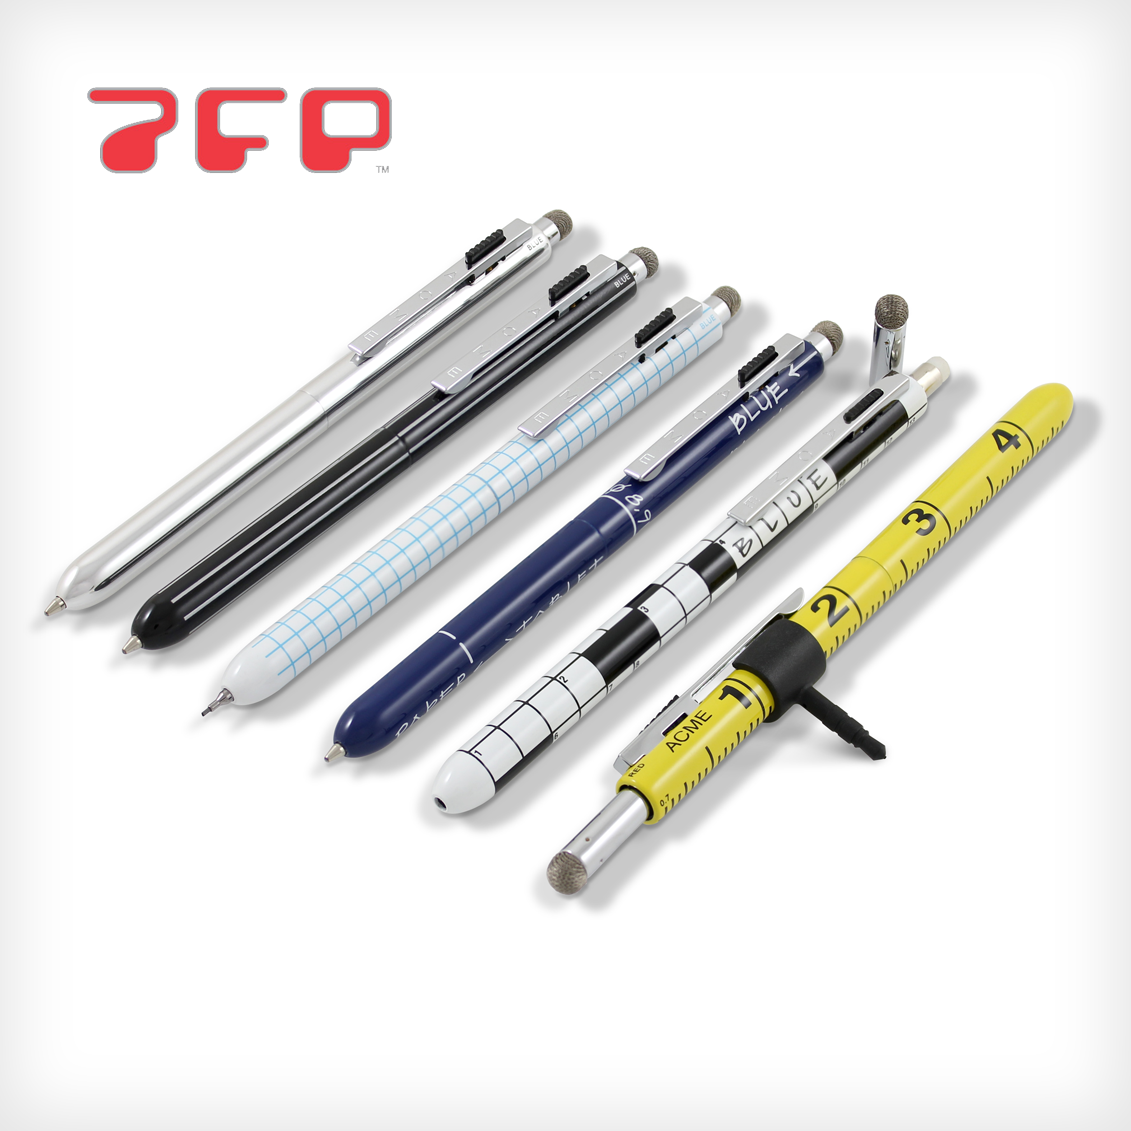 7FP - 7 Function Pen